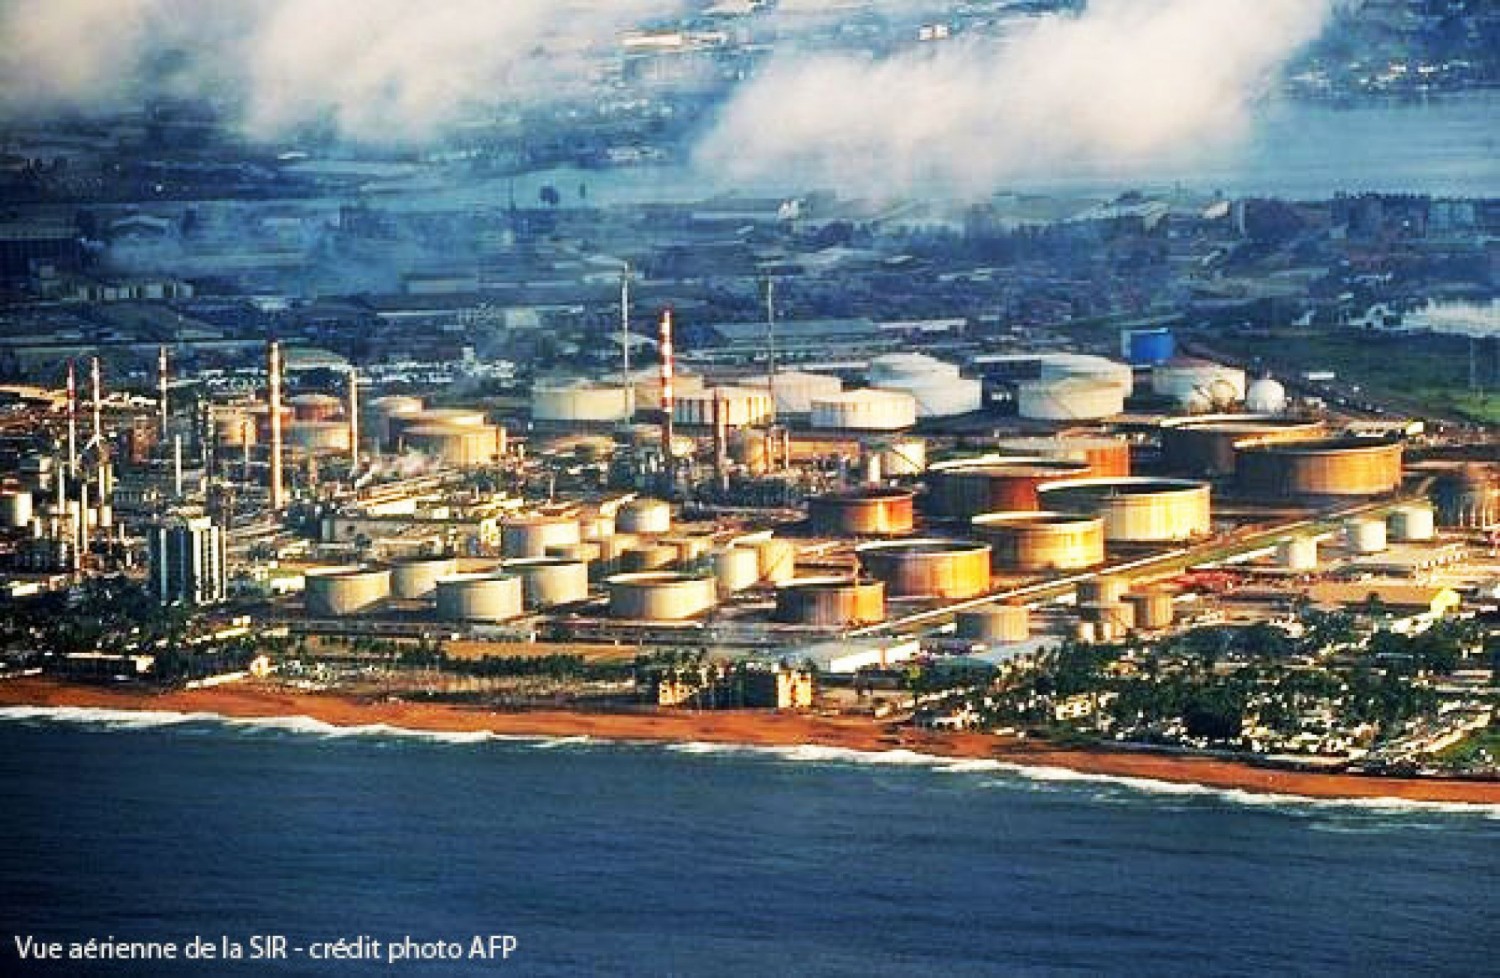 Côte d'Ivoire : Grève dans le secteur pétrolier depuis samedi, les raisons évoquées